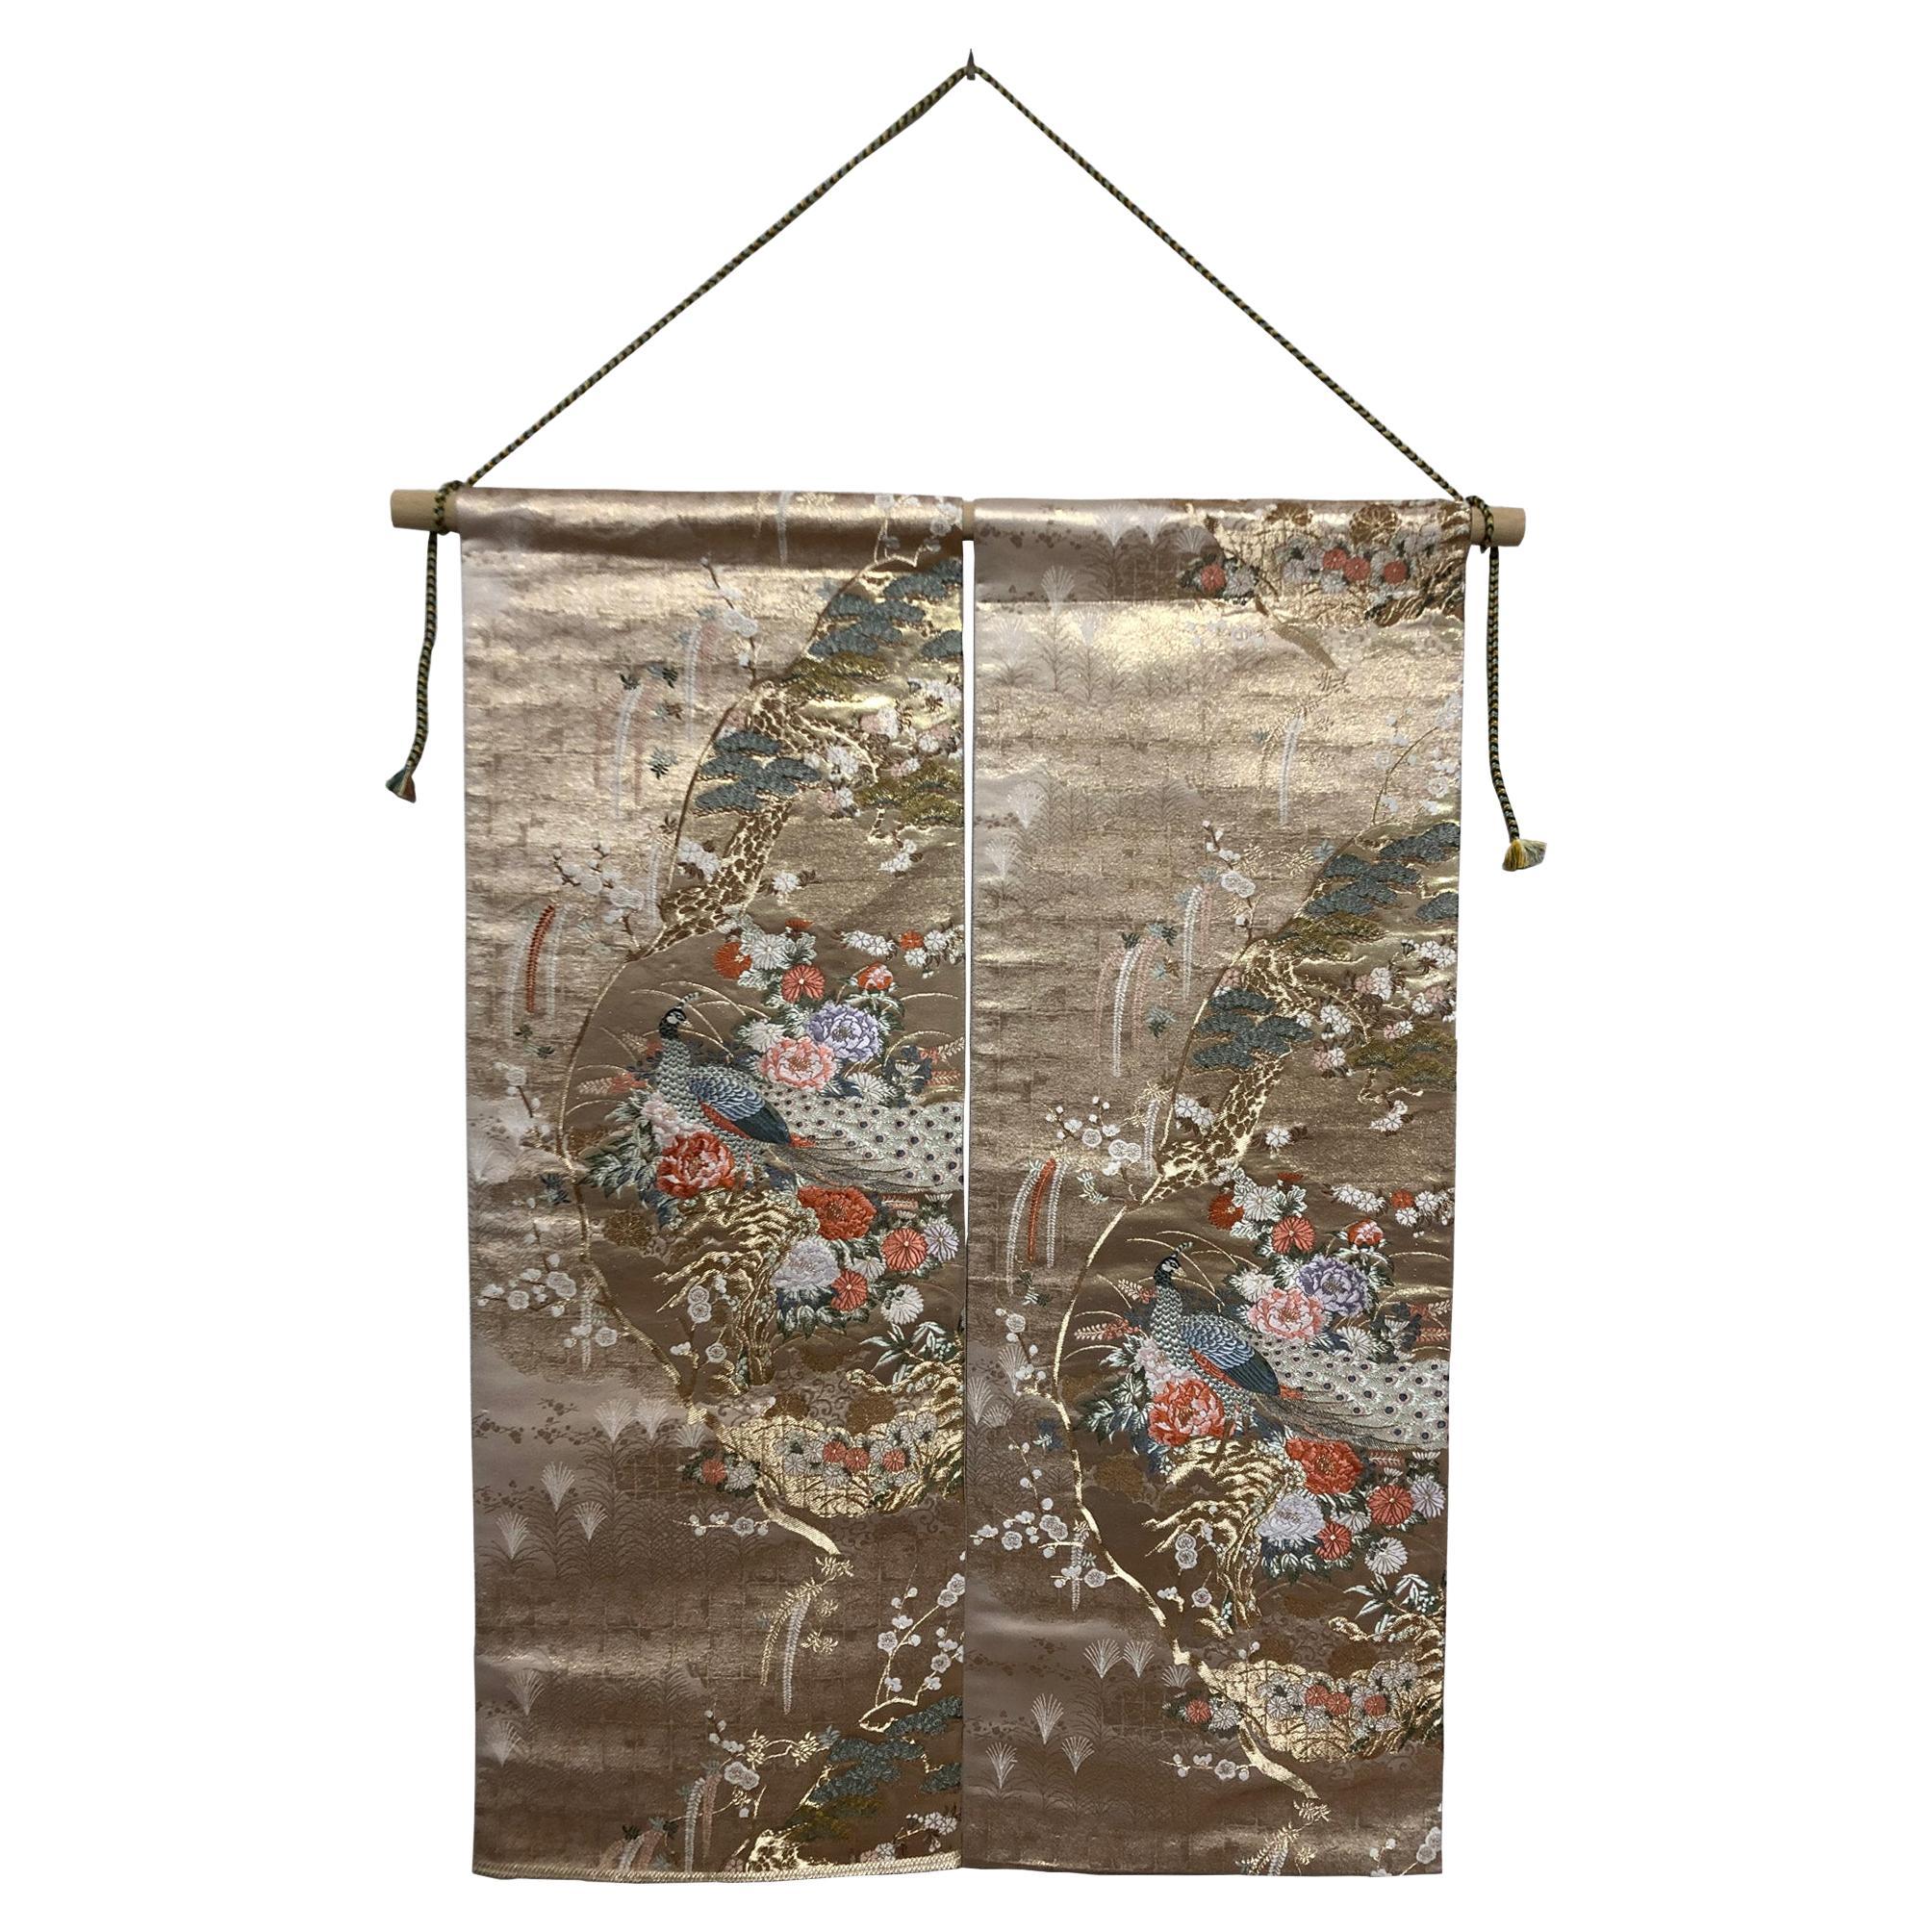 Art japonais du kimono / tapisserie, La reine des paons